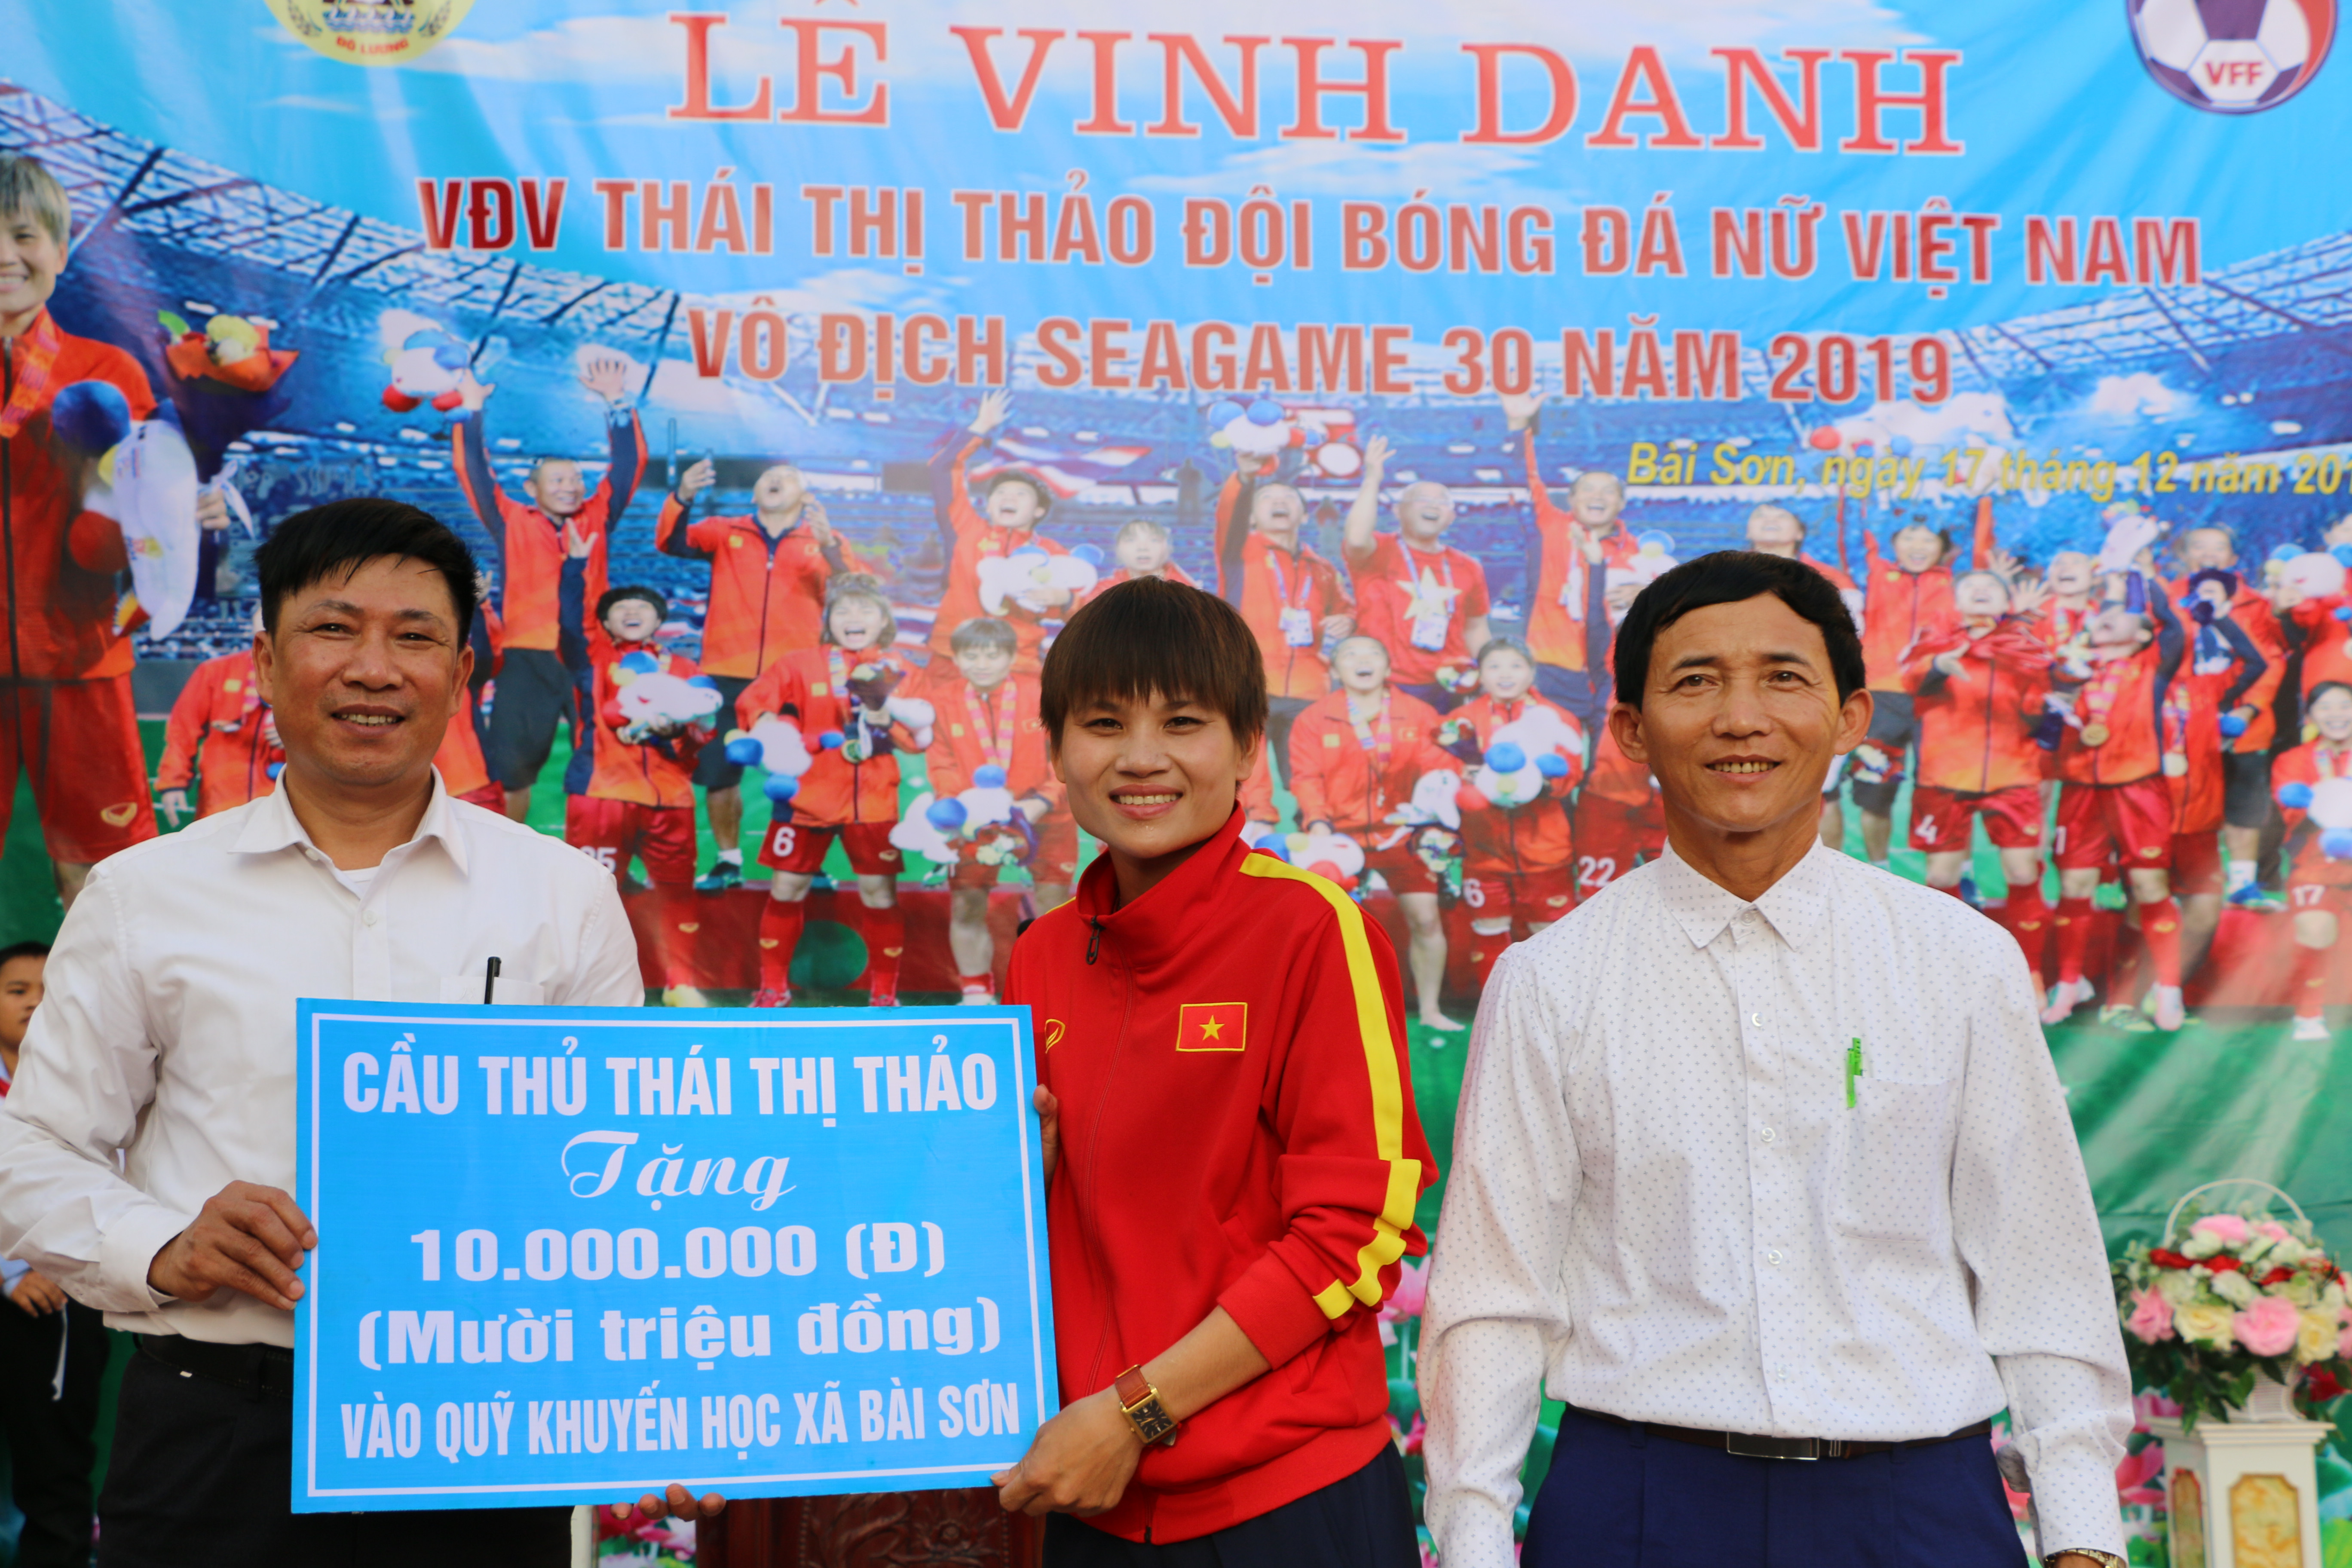 Cầu thủ Thái Thị Thảo tặng Hội khuyến học xã Bài Sơn 10 triệu đồng để giúp đỡ các em có hoàn cảnh khó khăn.